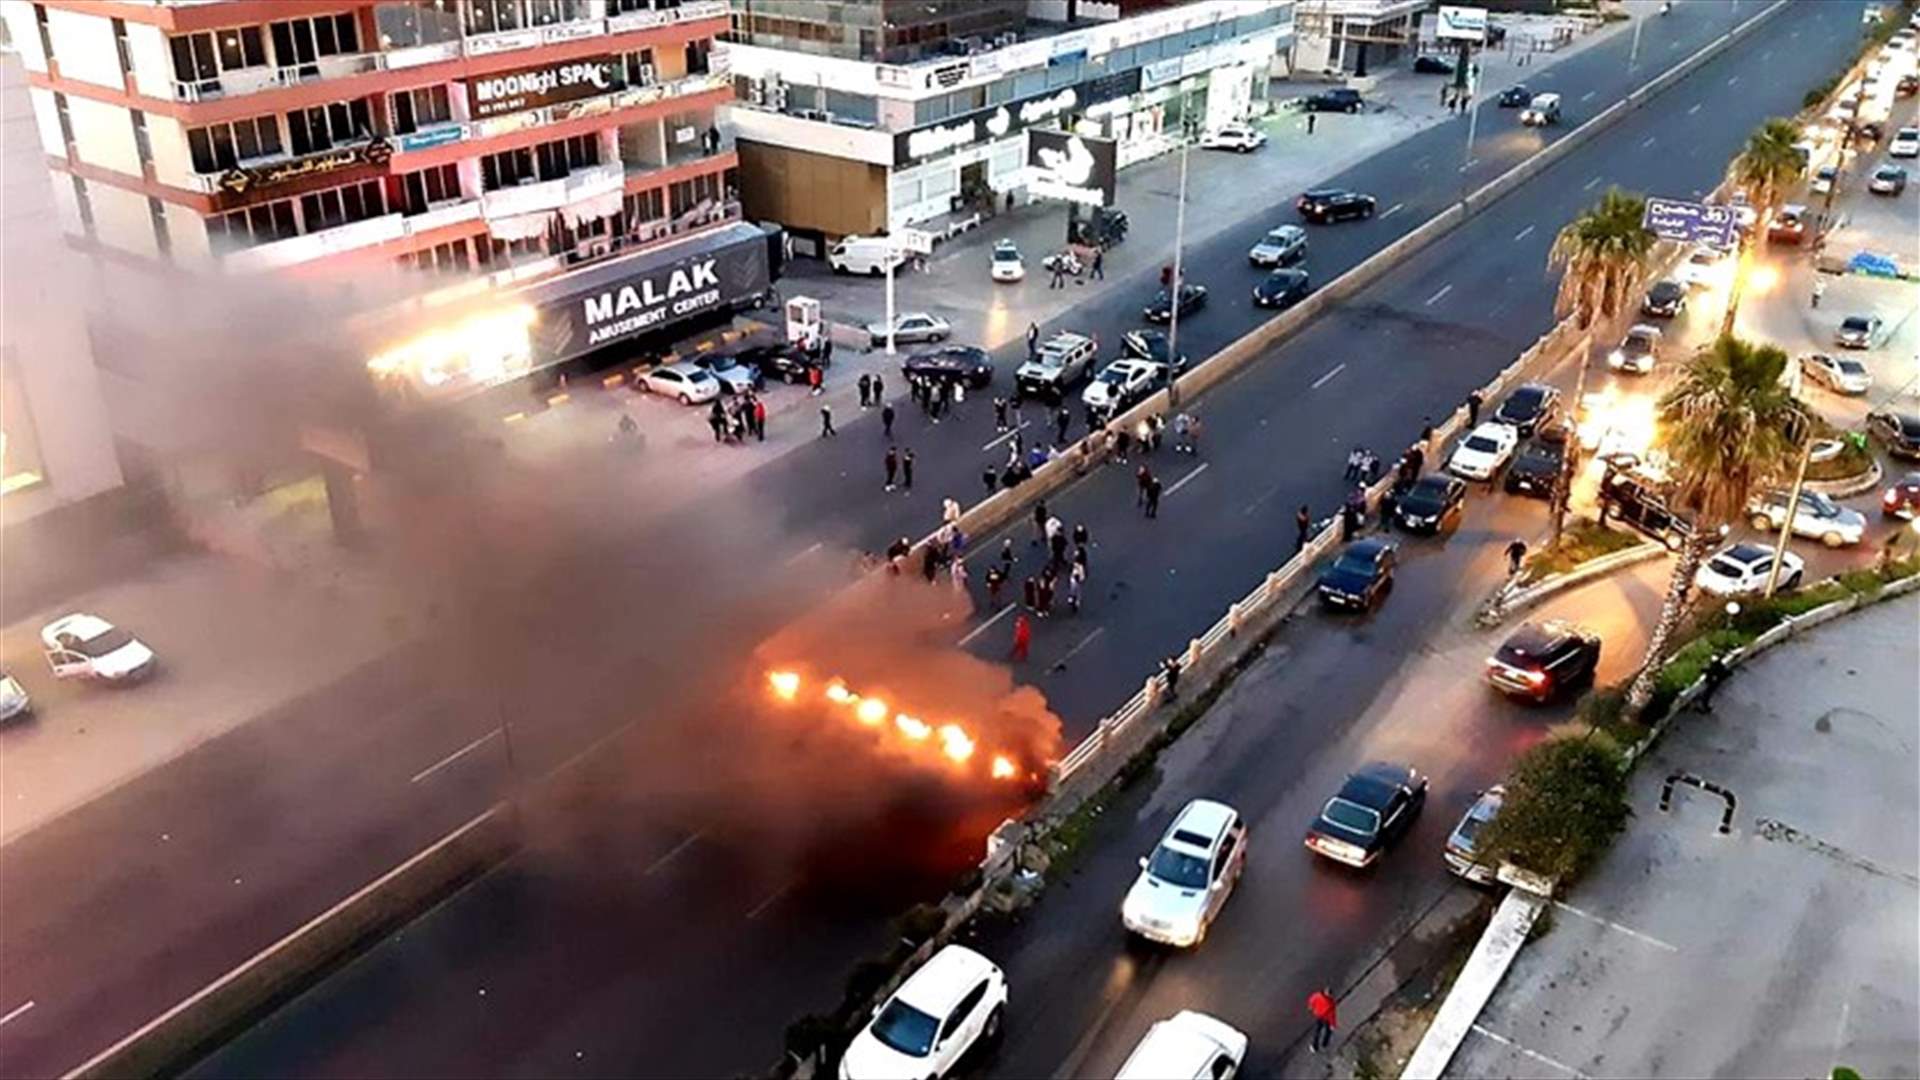 قطع الطرقات والاحتجاجات مستمرة مع تواصل تردي الأوضاع المعيشية (صور)